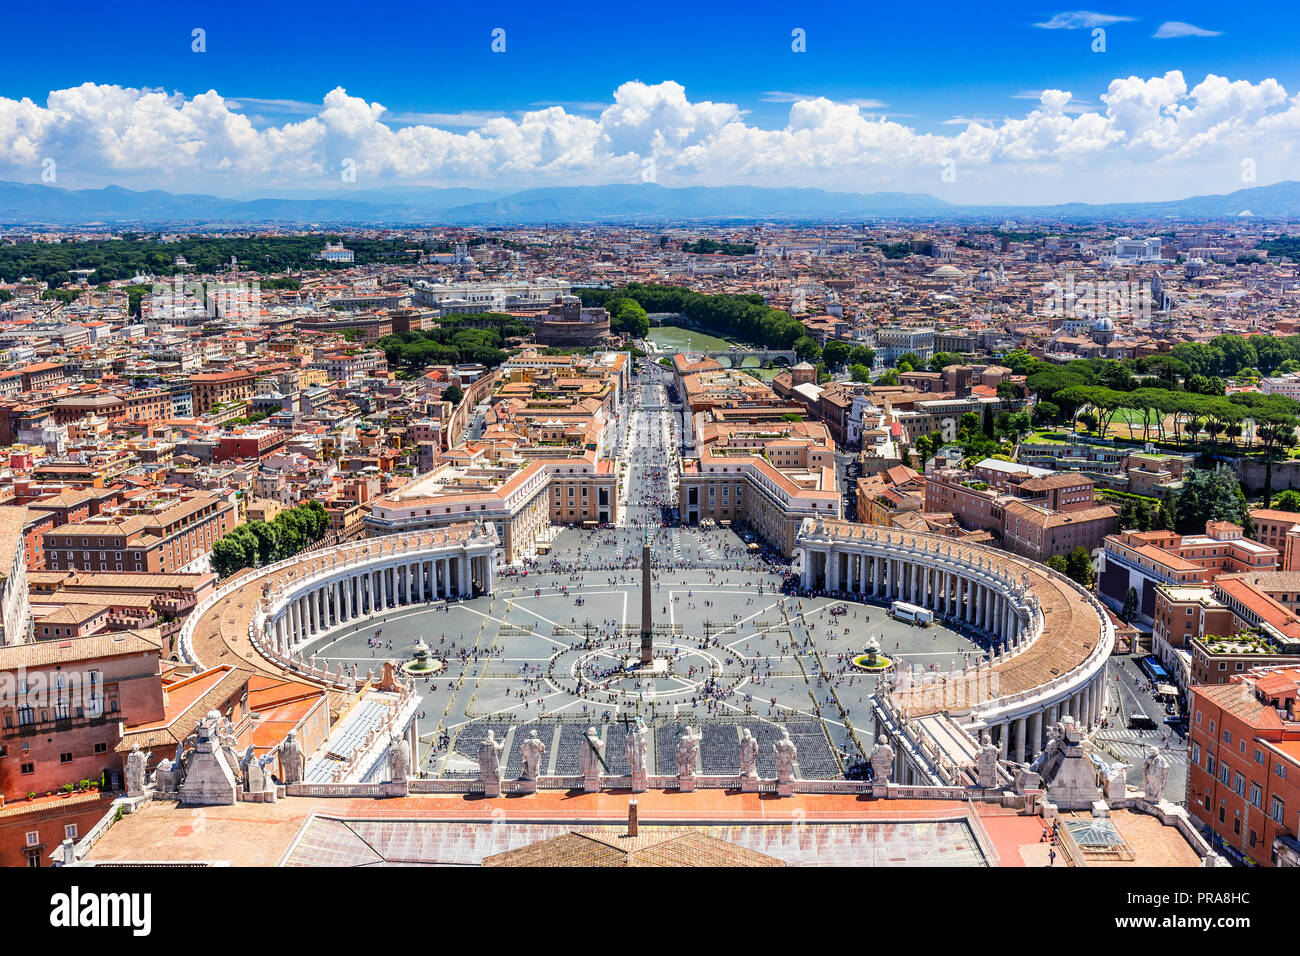 Rom, Italien. Berühmten Petersplatz im Vatikan und Luftaufnahmen Blick auf die Stadt. Stockfoto